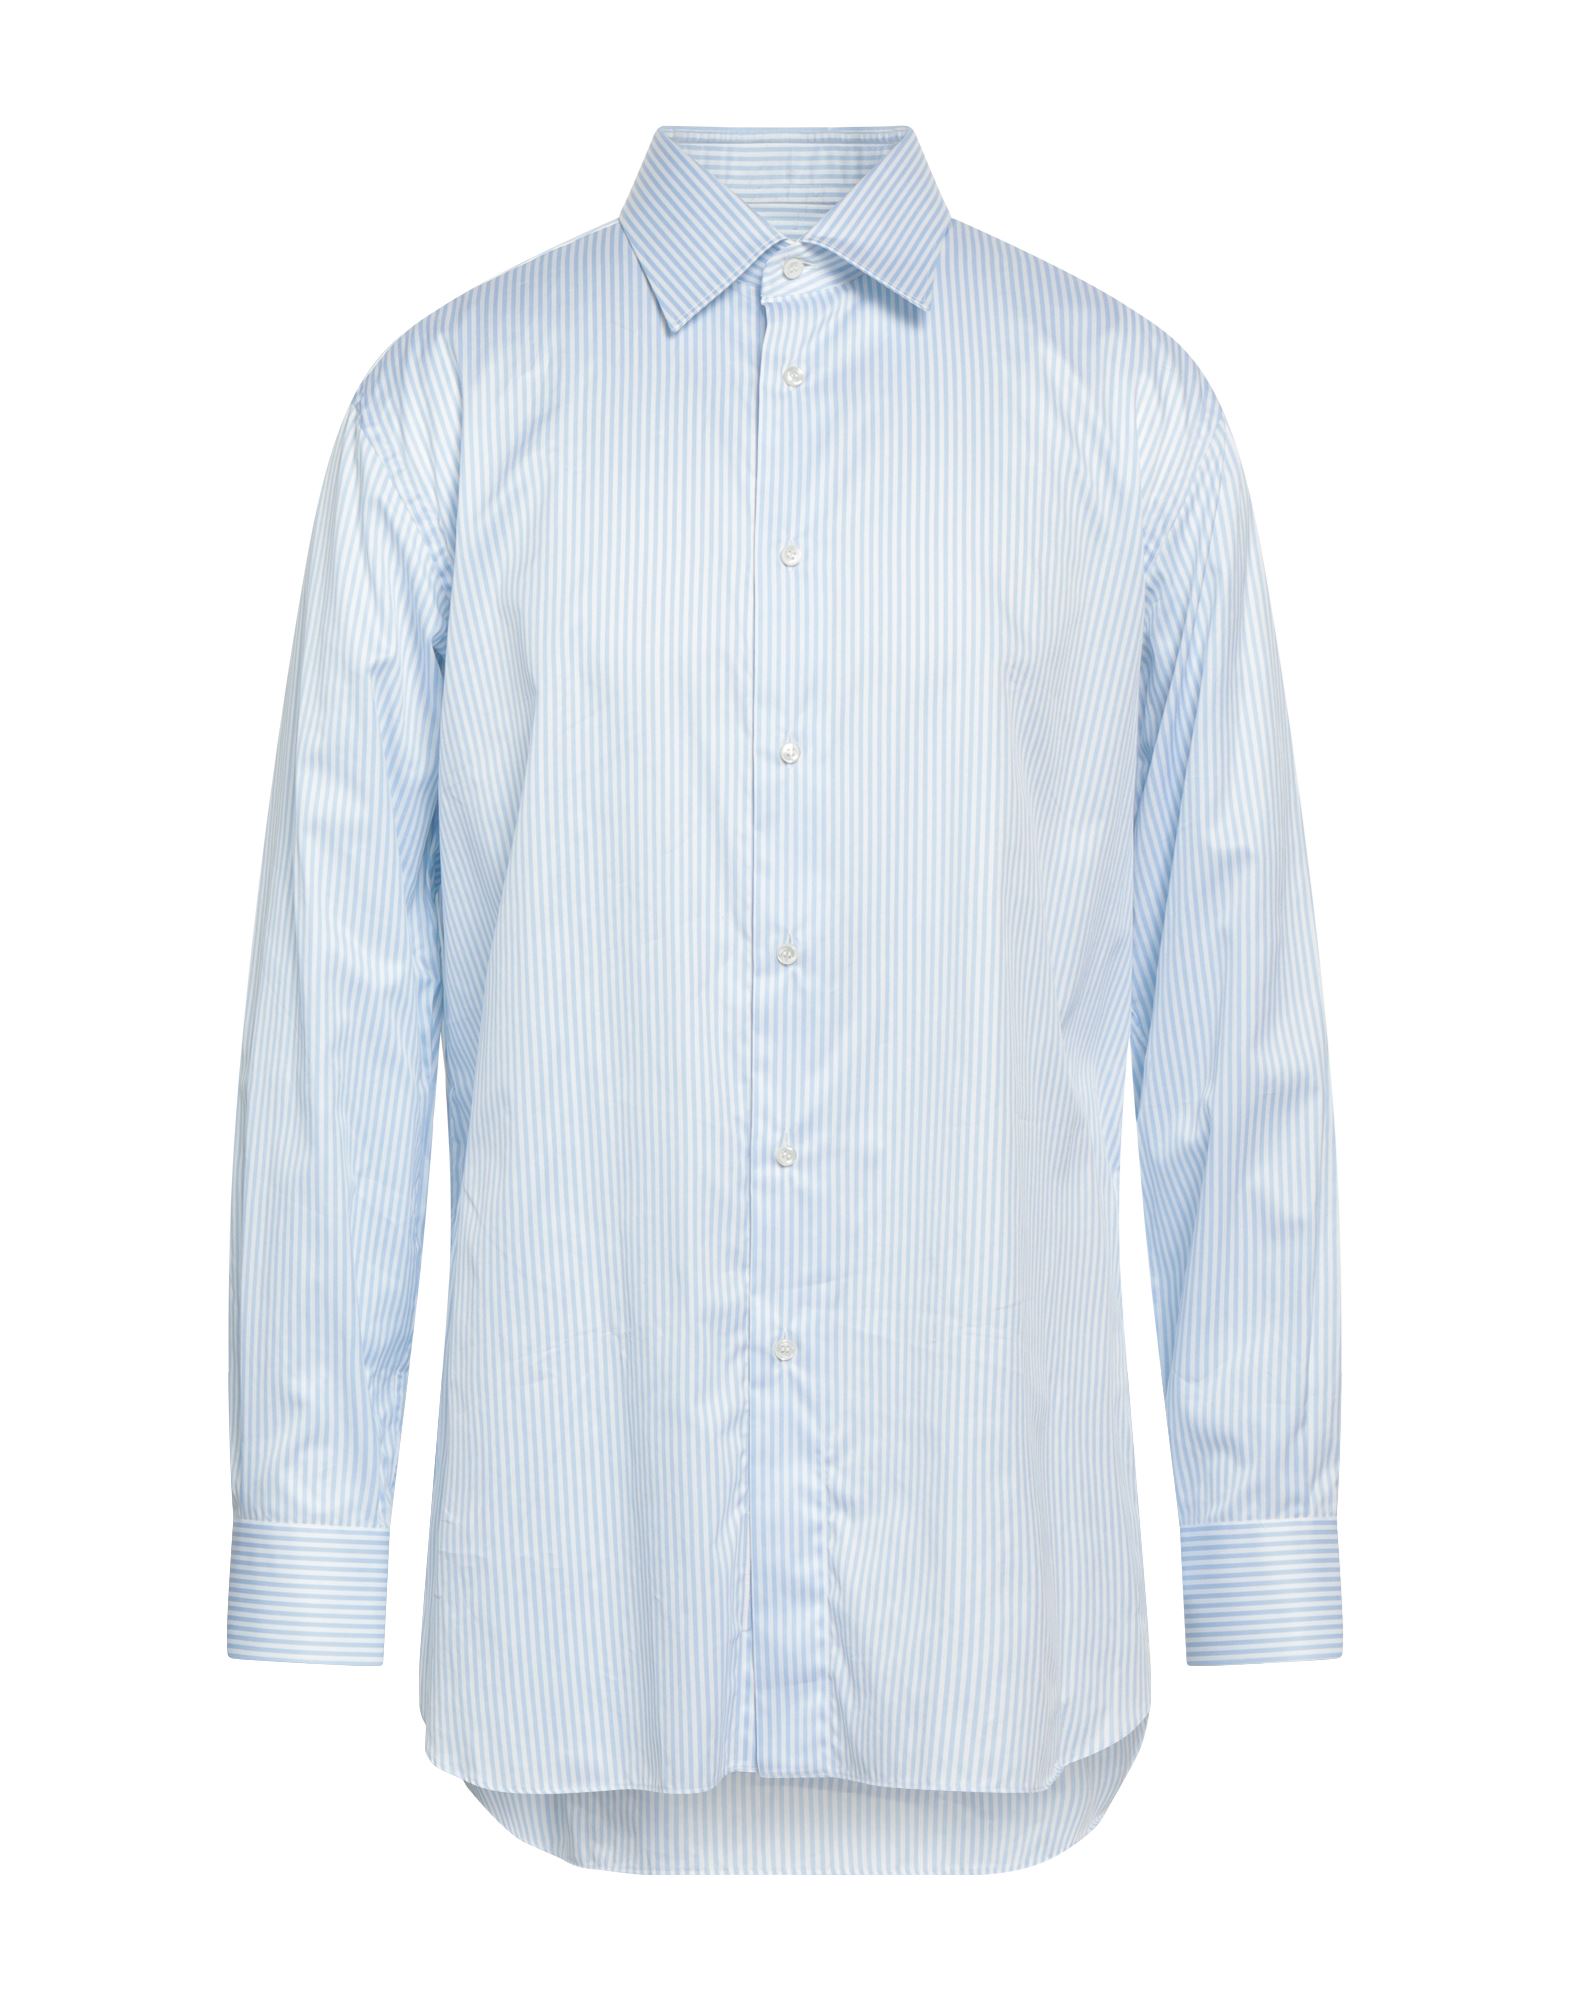 ブリオーニ(Brioni) メンズシャツ・ワイシャツ | 通販・人気ランキング